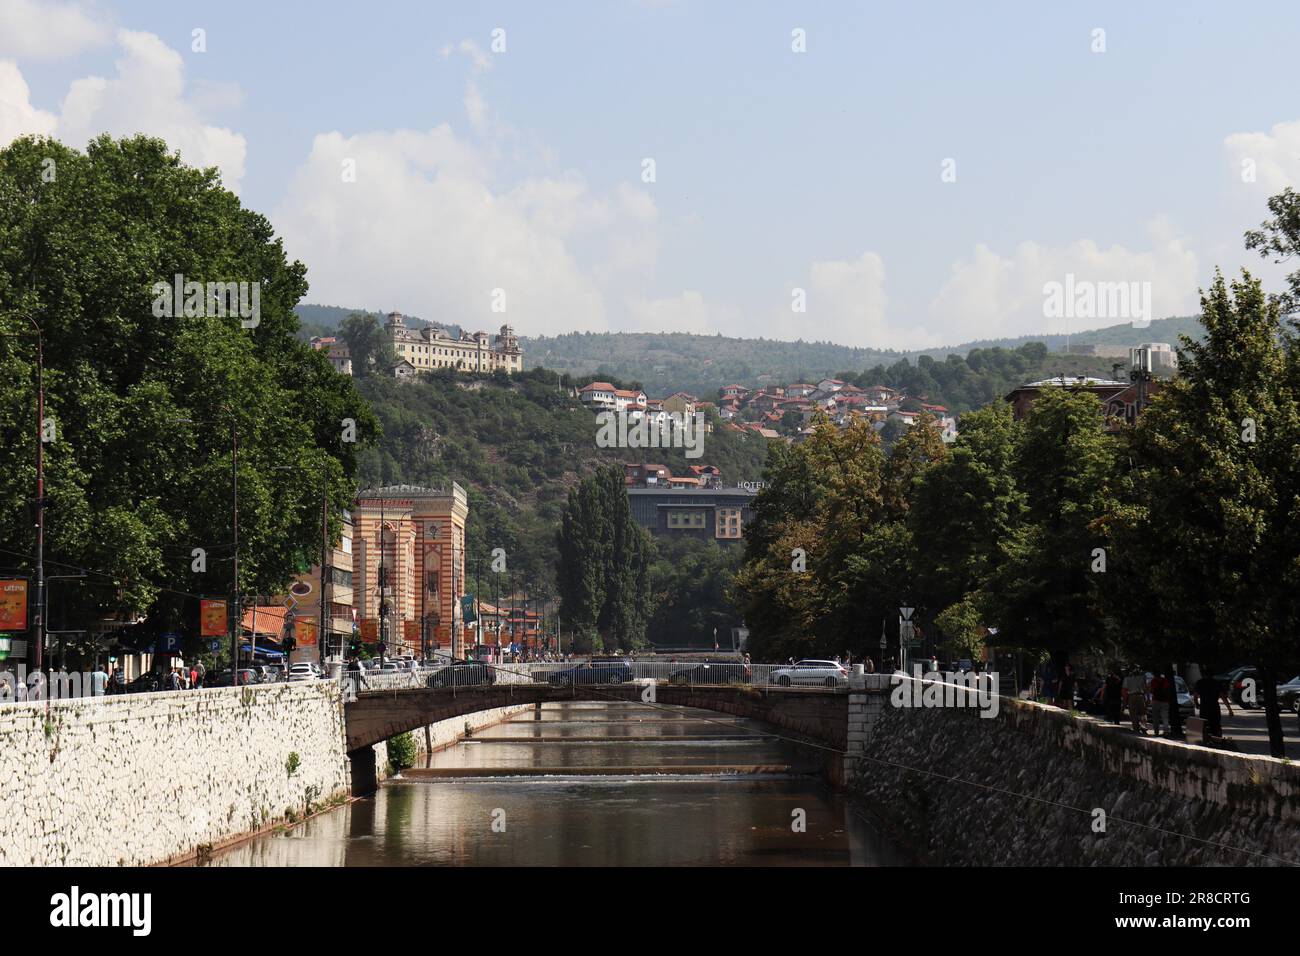 Les beautés de la ville de Sarajevo et les influences de cultures diffuses se reflètent dans l'architecture de la ville. Banque D'Images